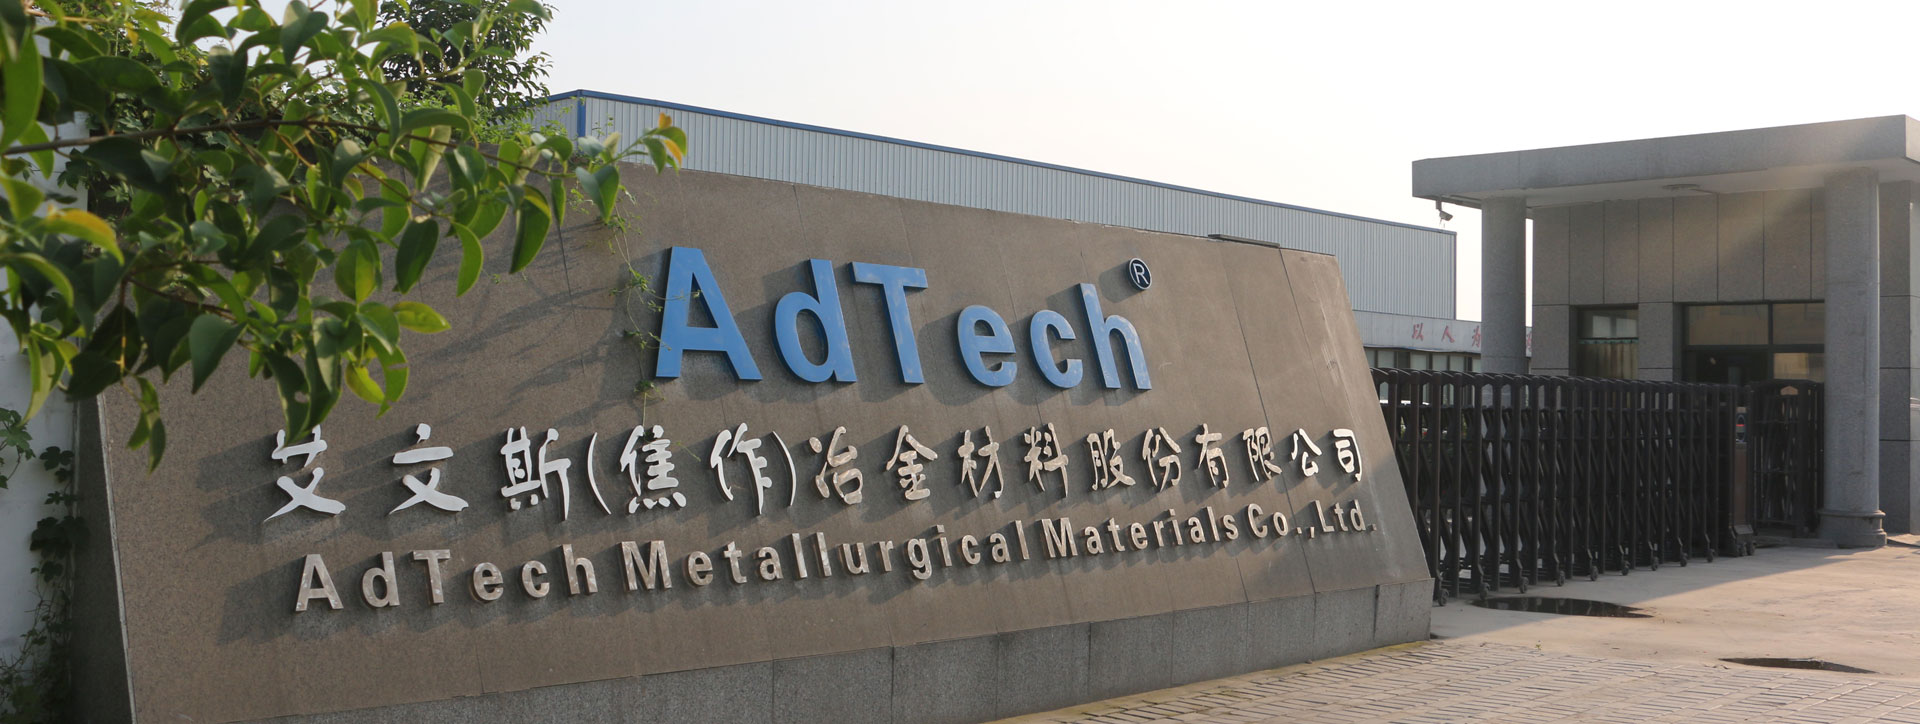 AdTech Metallurgical Materials Co.,Ltd.